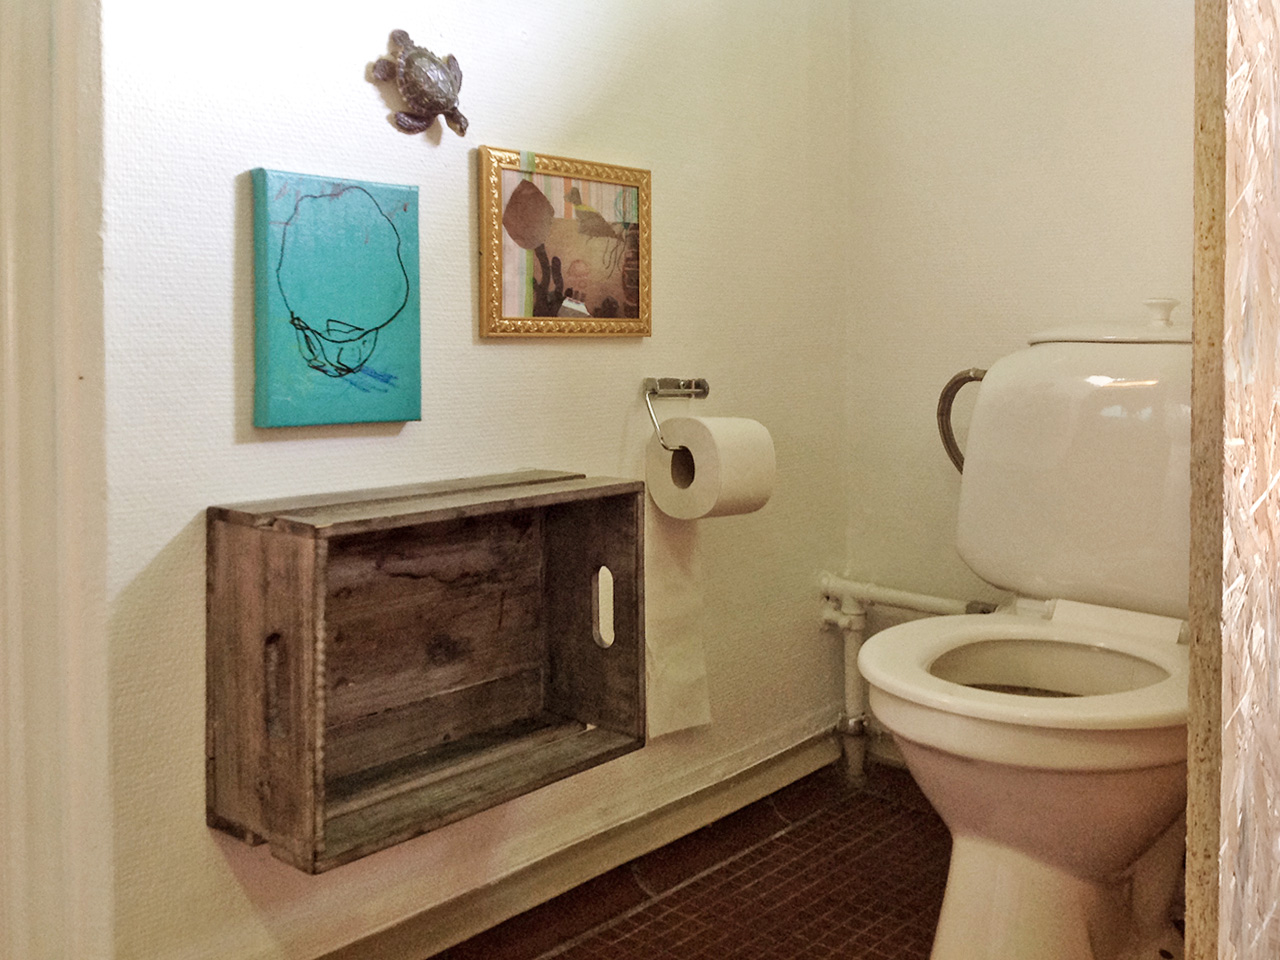 Pædagogisk indretning til børn - toilet